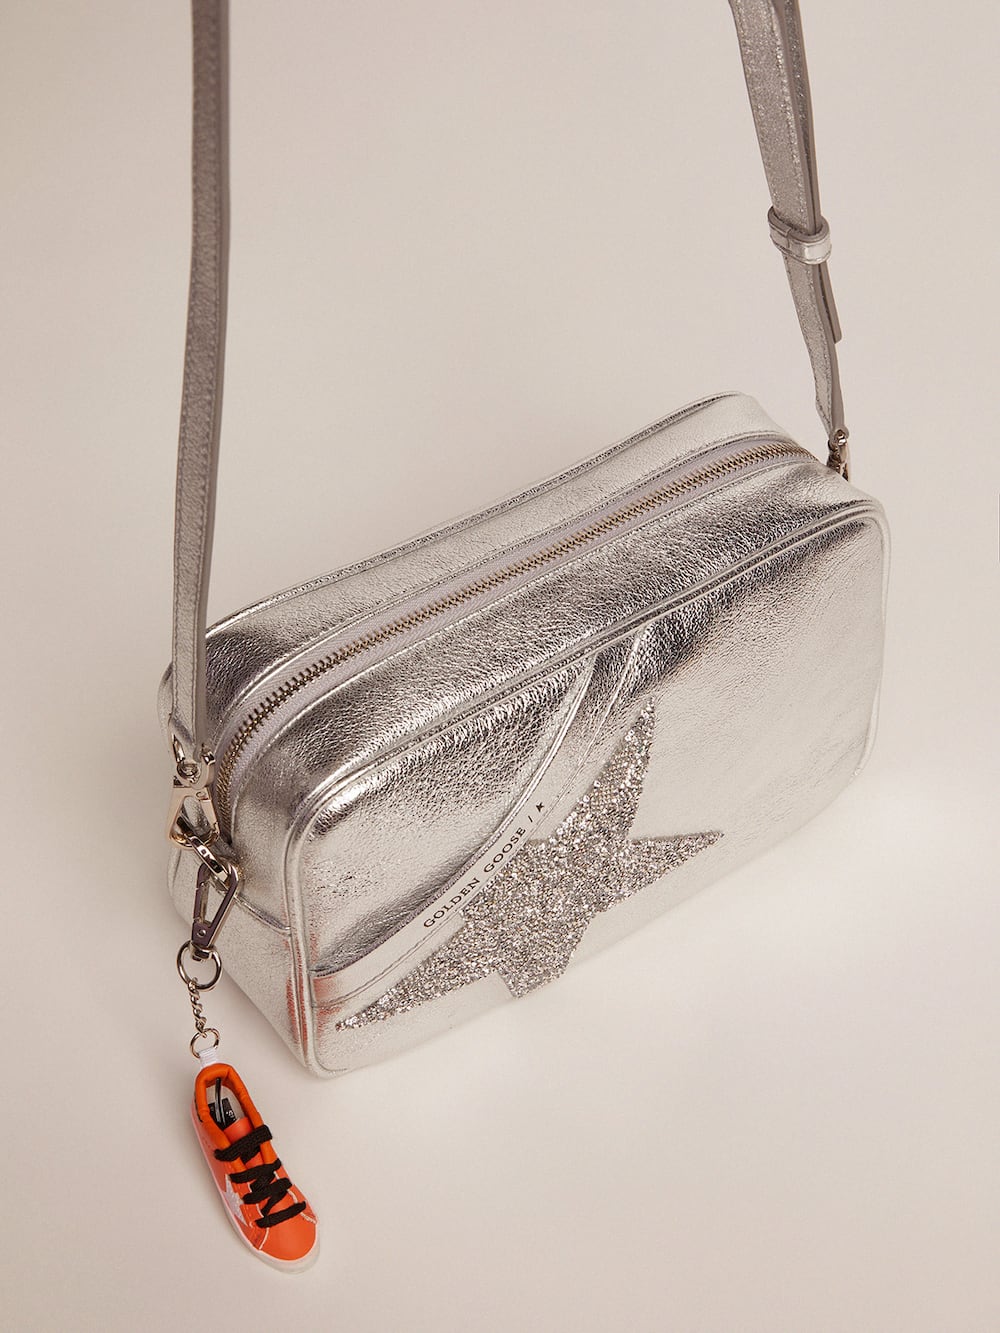 Golden Goose - Star Bag plateado de piel laminada con estrella con cristales Swarovski in 